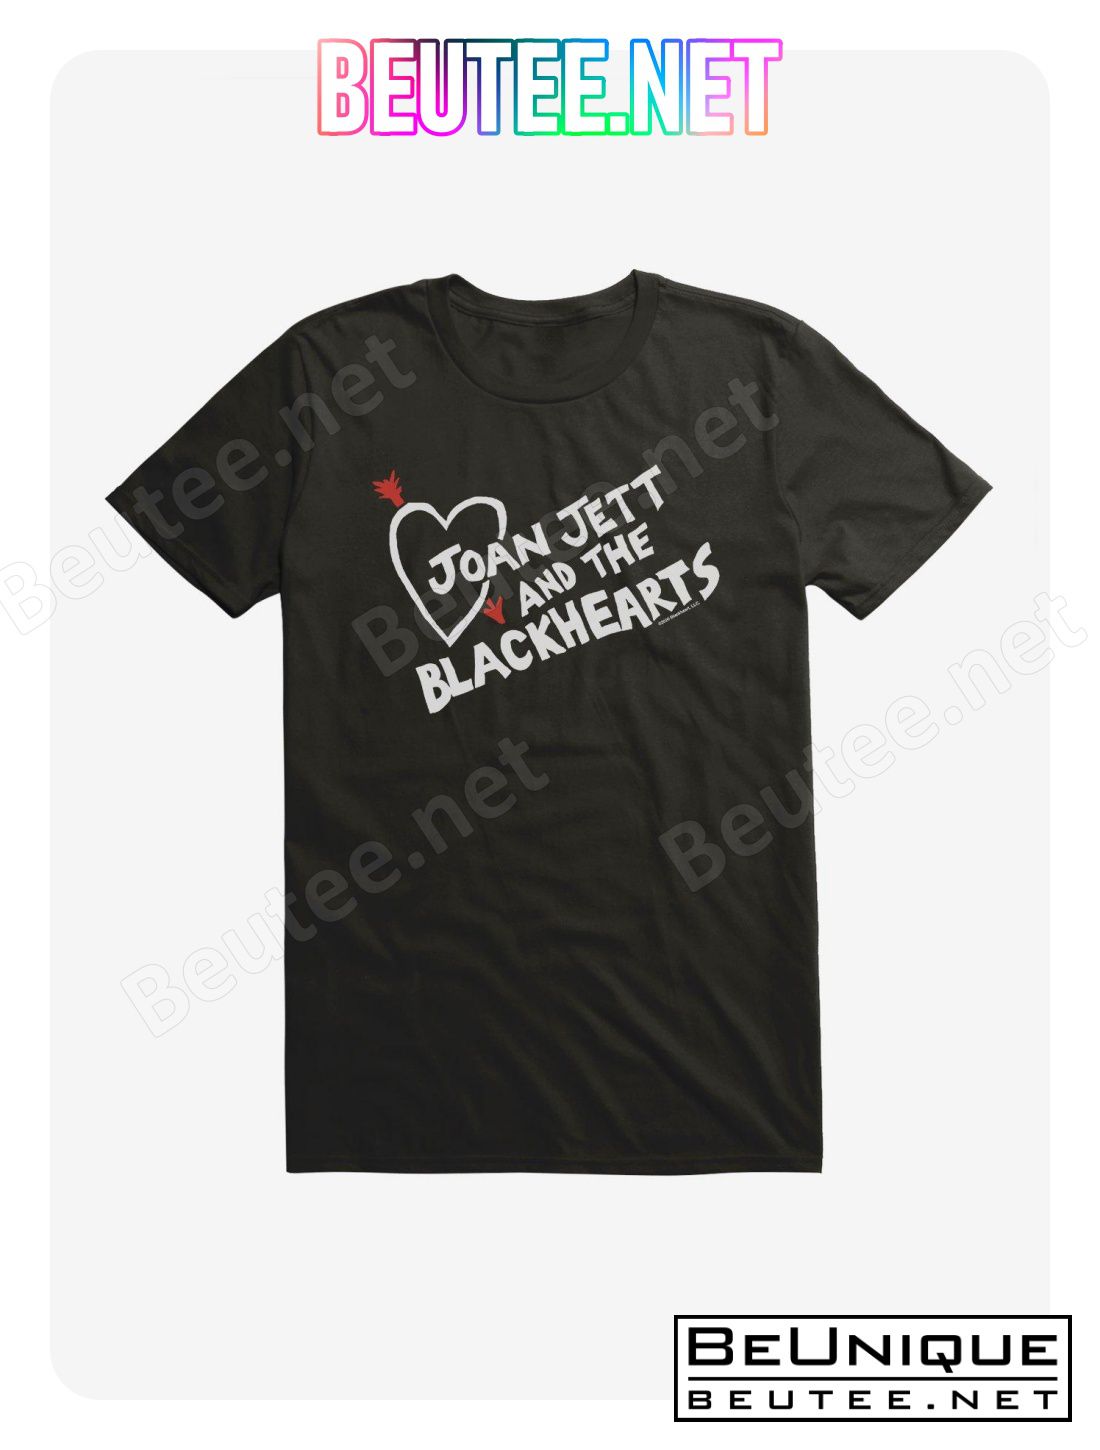 Joan Jett And The Blackhearts Arrow T-Shirt